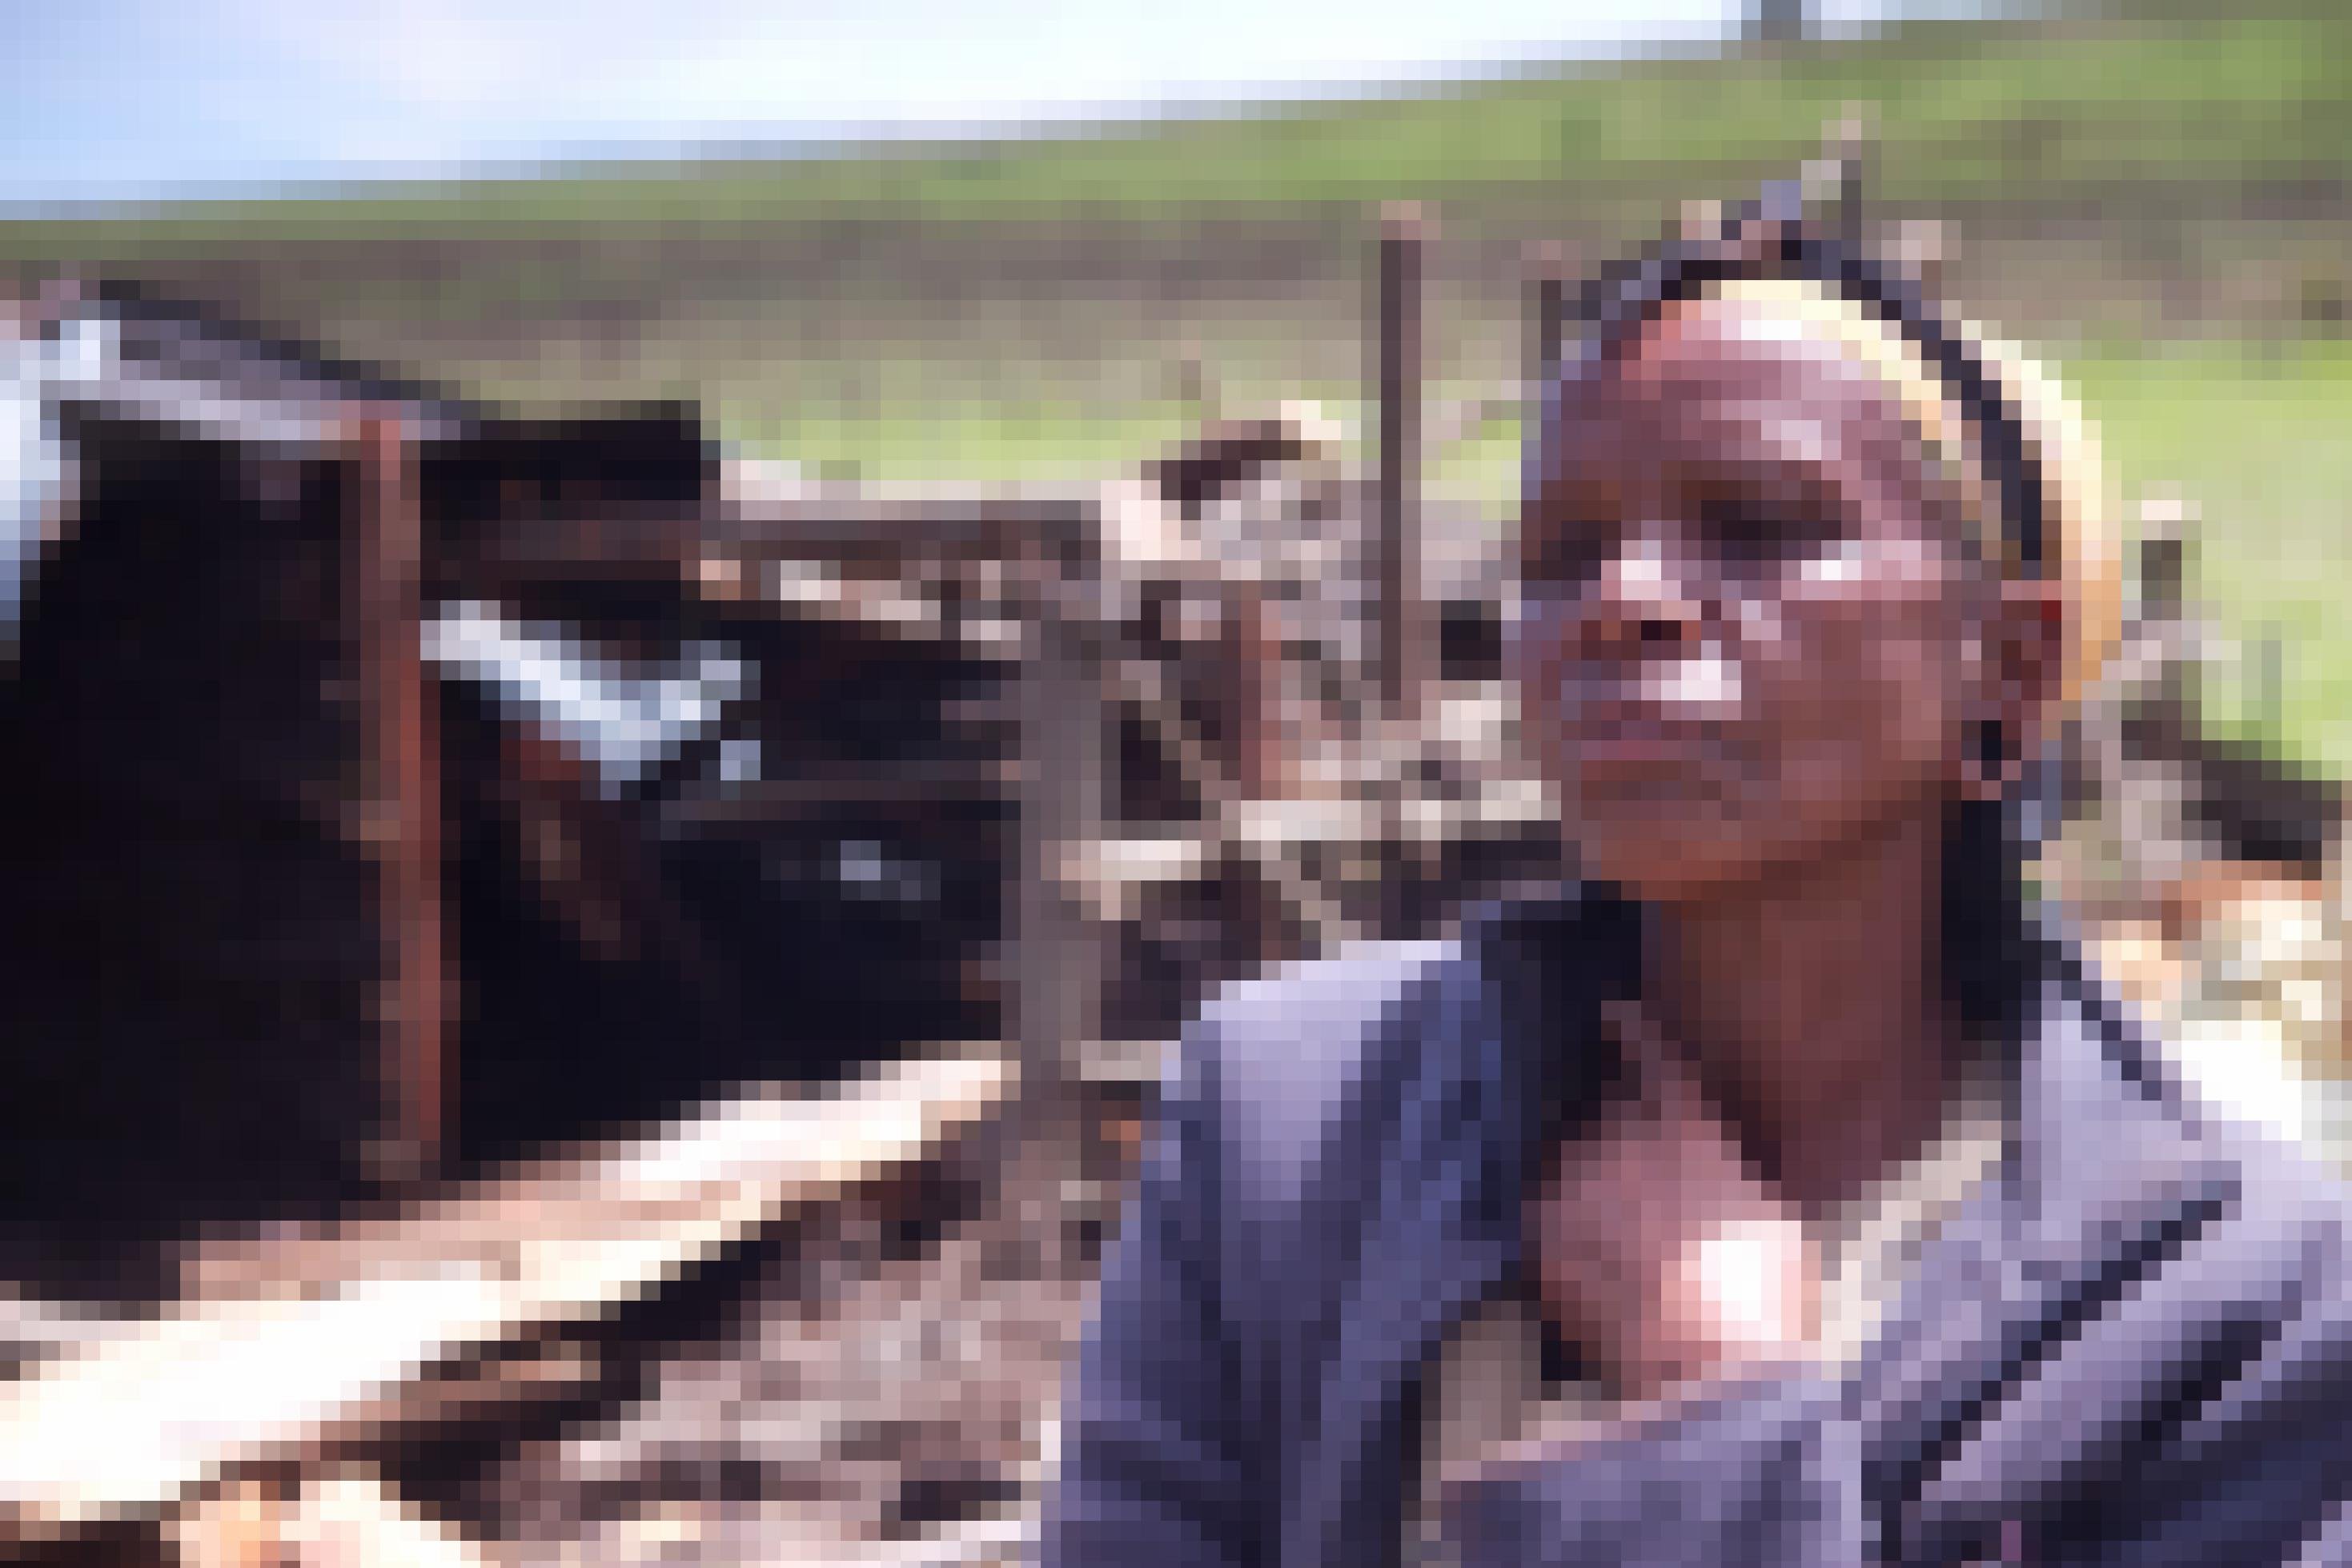 Im Vordergrund ist eine Ogiek-Frau zu sehen mit traurigem Blick, im Hintergrund die Überreste ihres abgebrannten und zerstörten Hauses in Kenia.